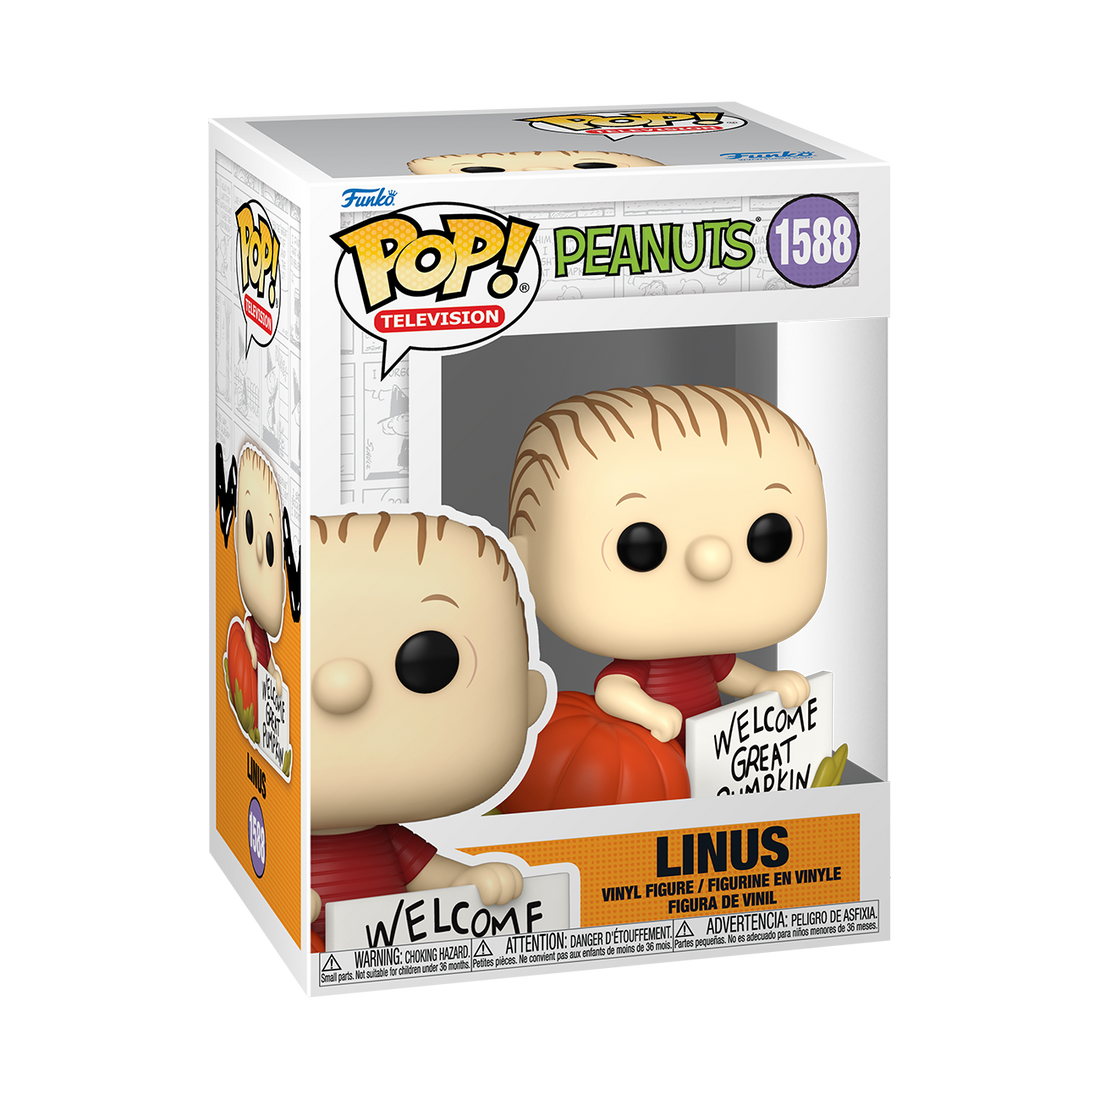 Funko Pop! Television Peanuts 1588 Linus Funko